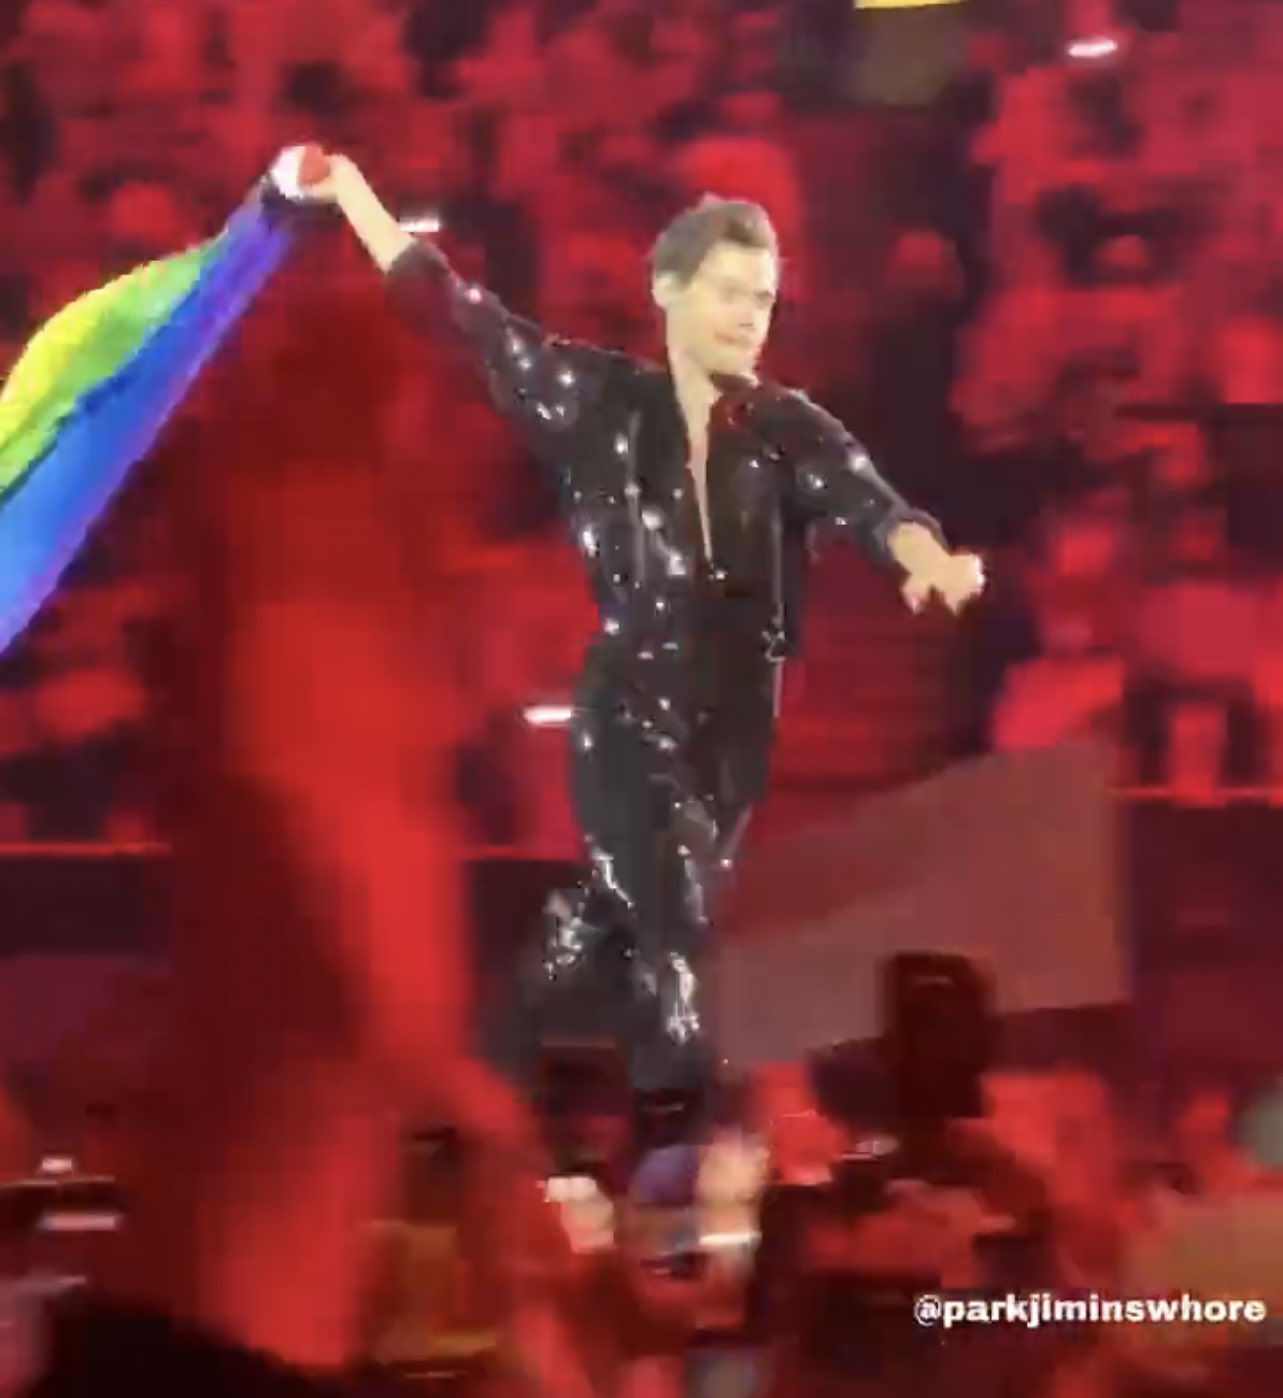 Harry Styles cầm cờ LGBT chạy quanh sân khấu, fan như nổ tung vì hành động của bộ đôi V - Jungkook (BTS) - Ảnh 3.